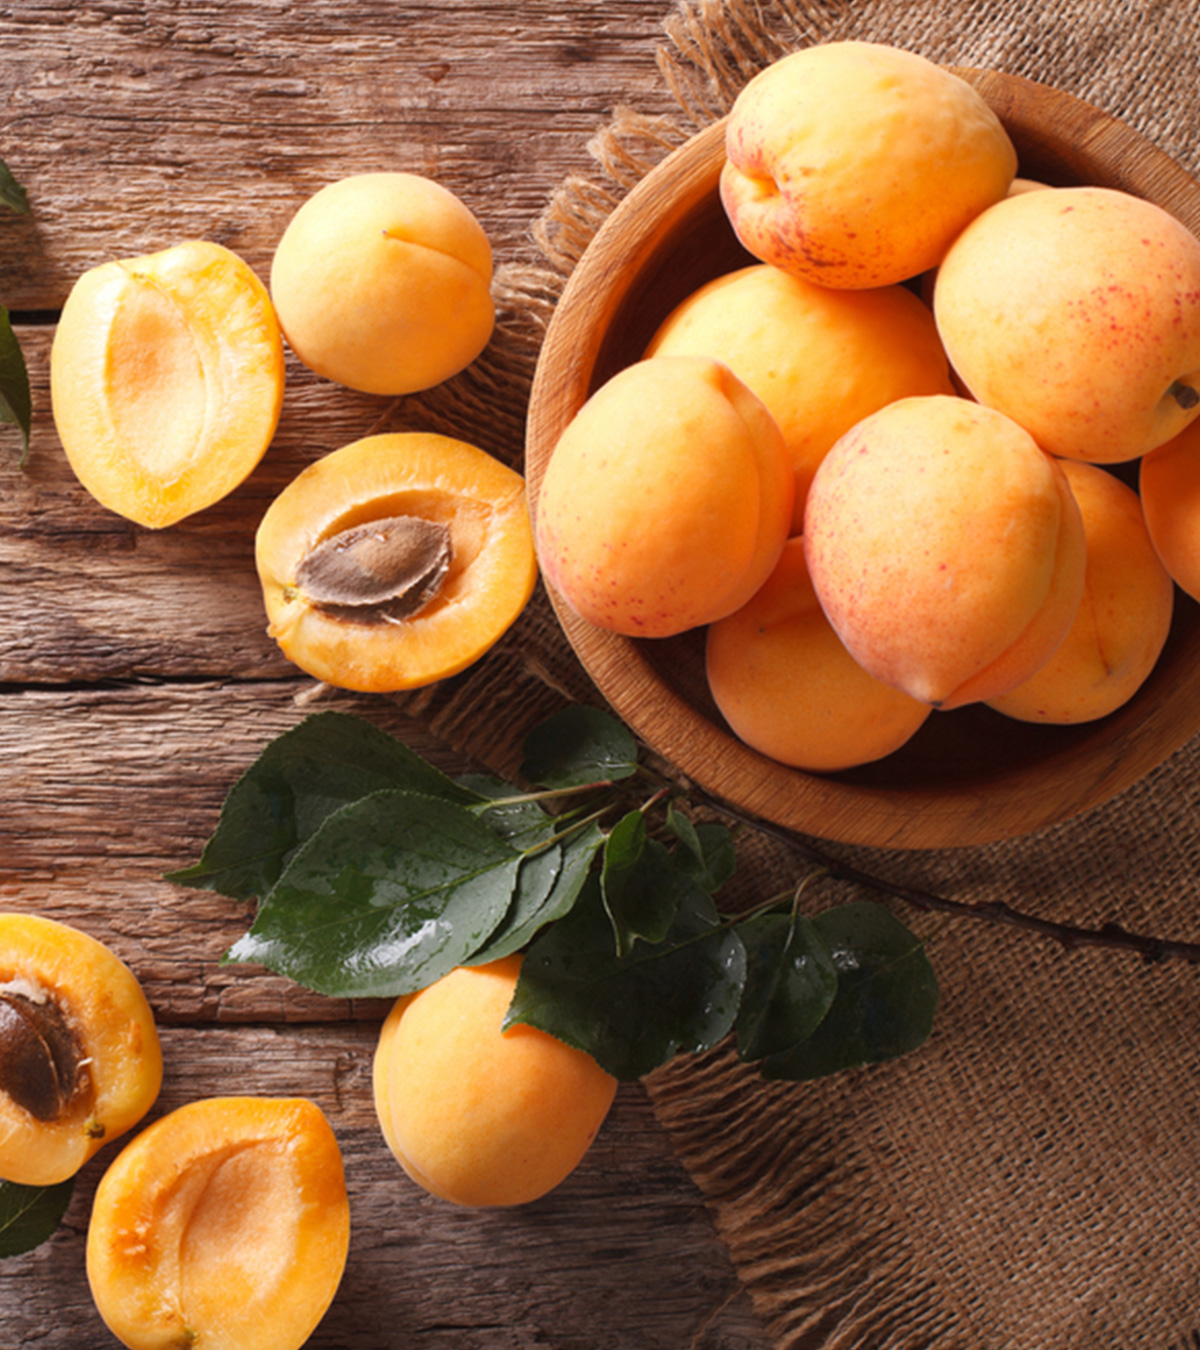 प्रेगनेंसी में खुबानी के फायदे और नुकसान  | Apricot Benefits In Pregnancy In Hindi